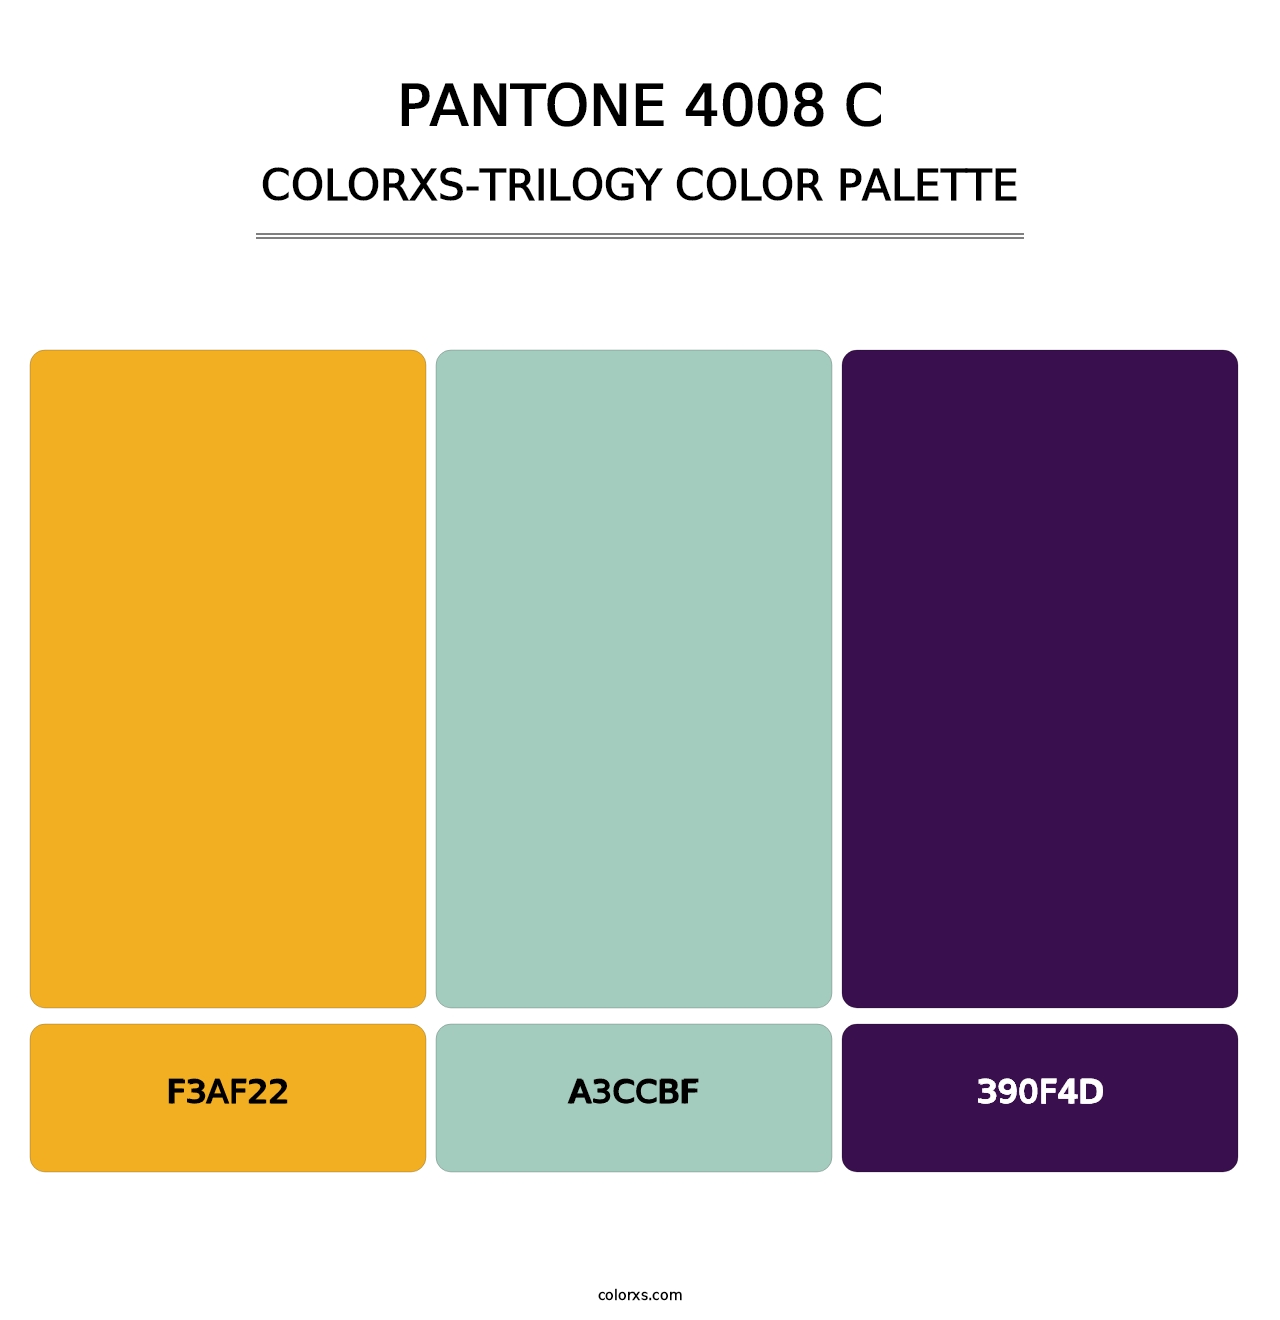 PANTONE 4008 C - Colorxs Trilogy Palette